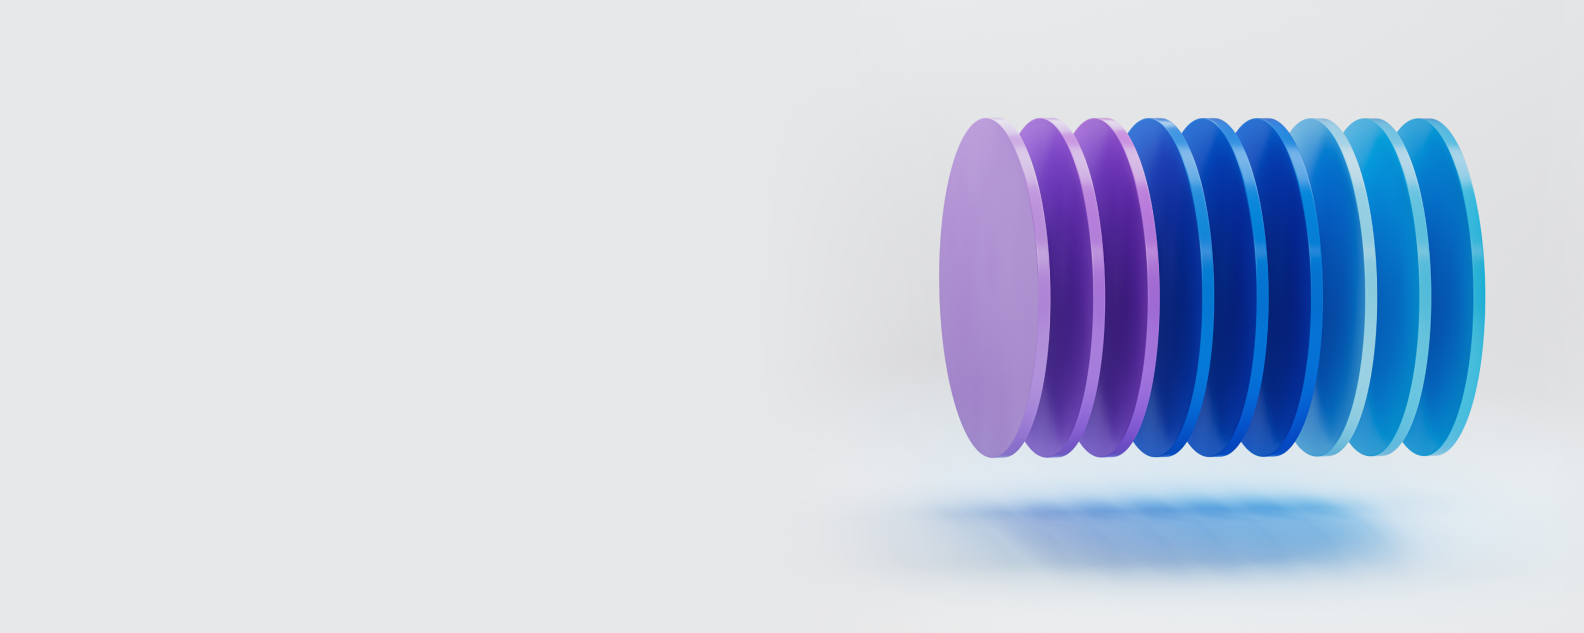 横向堆叠的紫色、蓝色和浅蓝色圆盘的插图